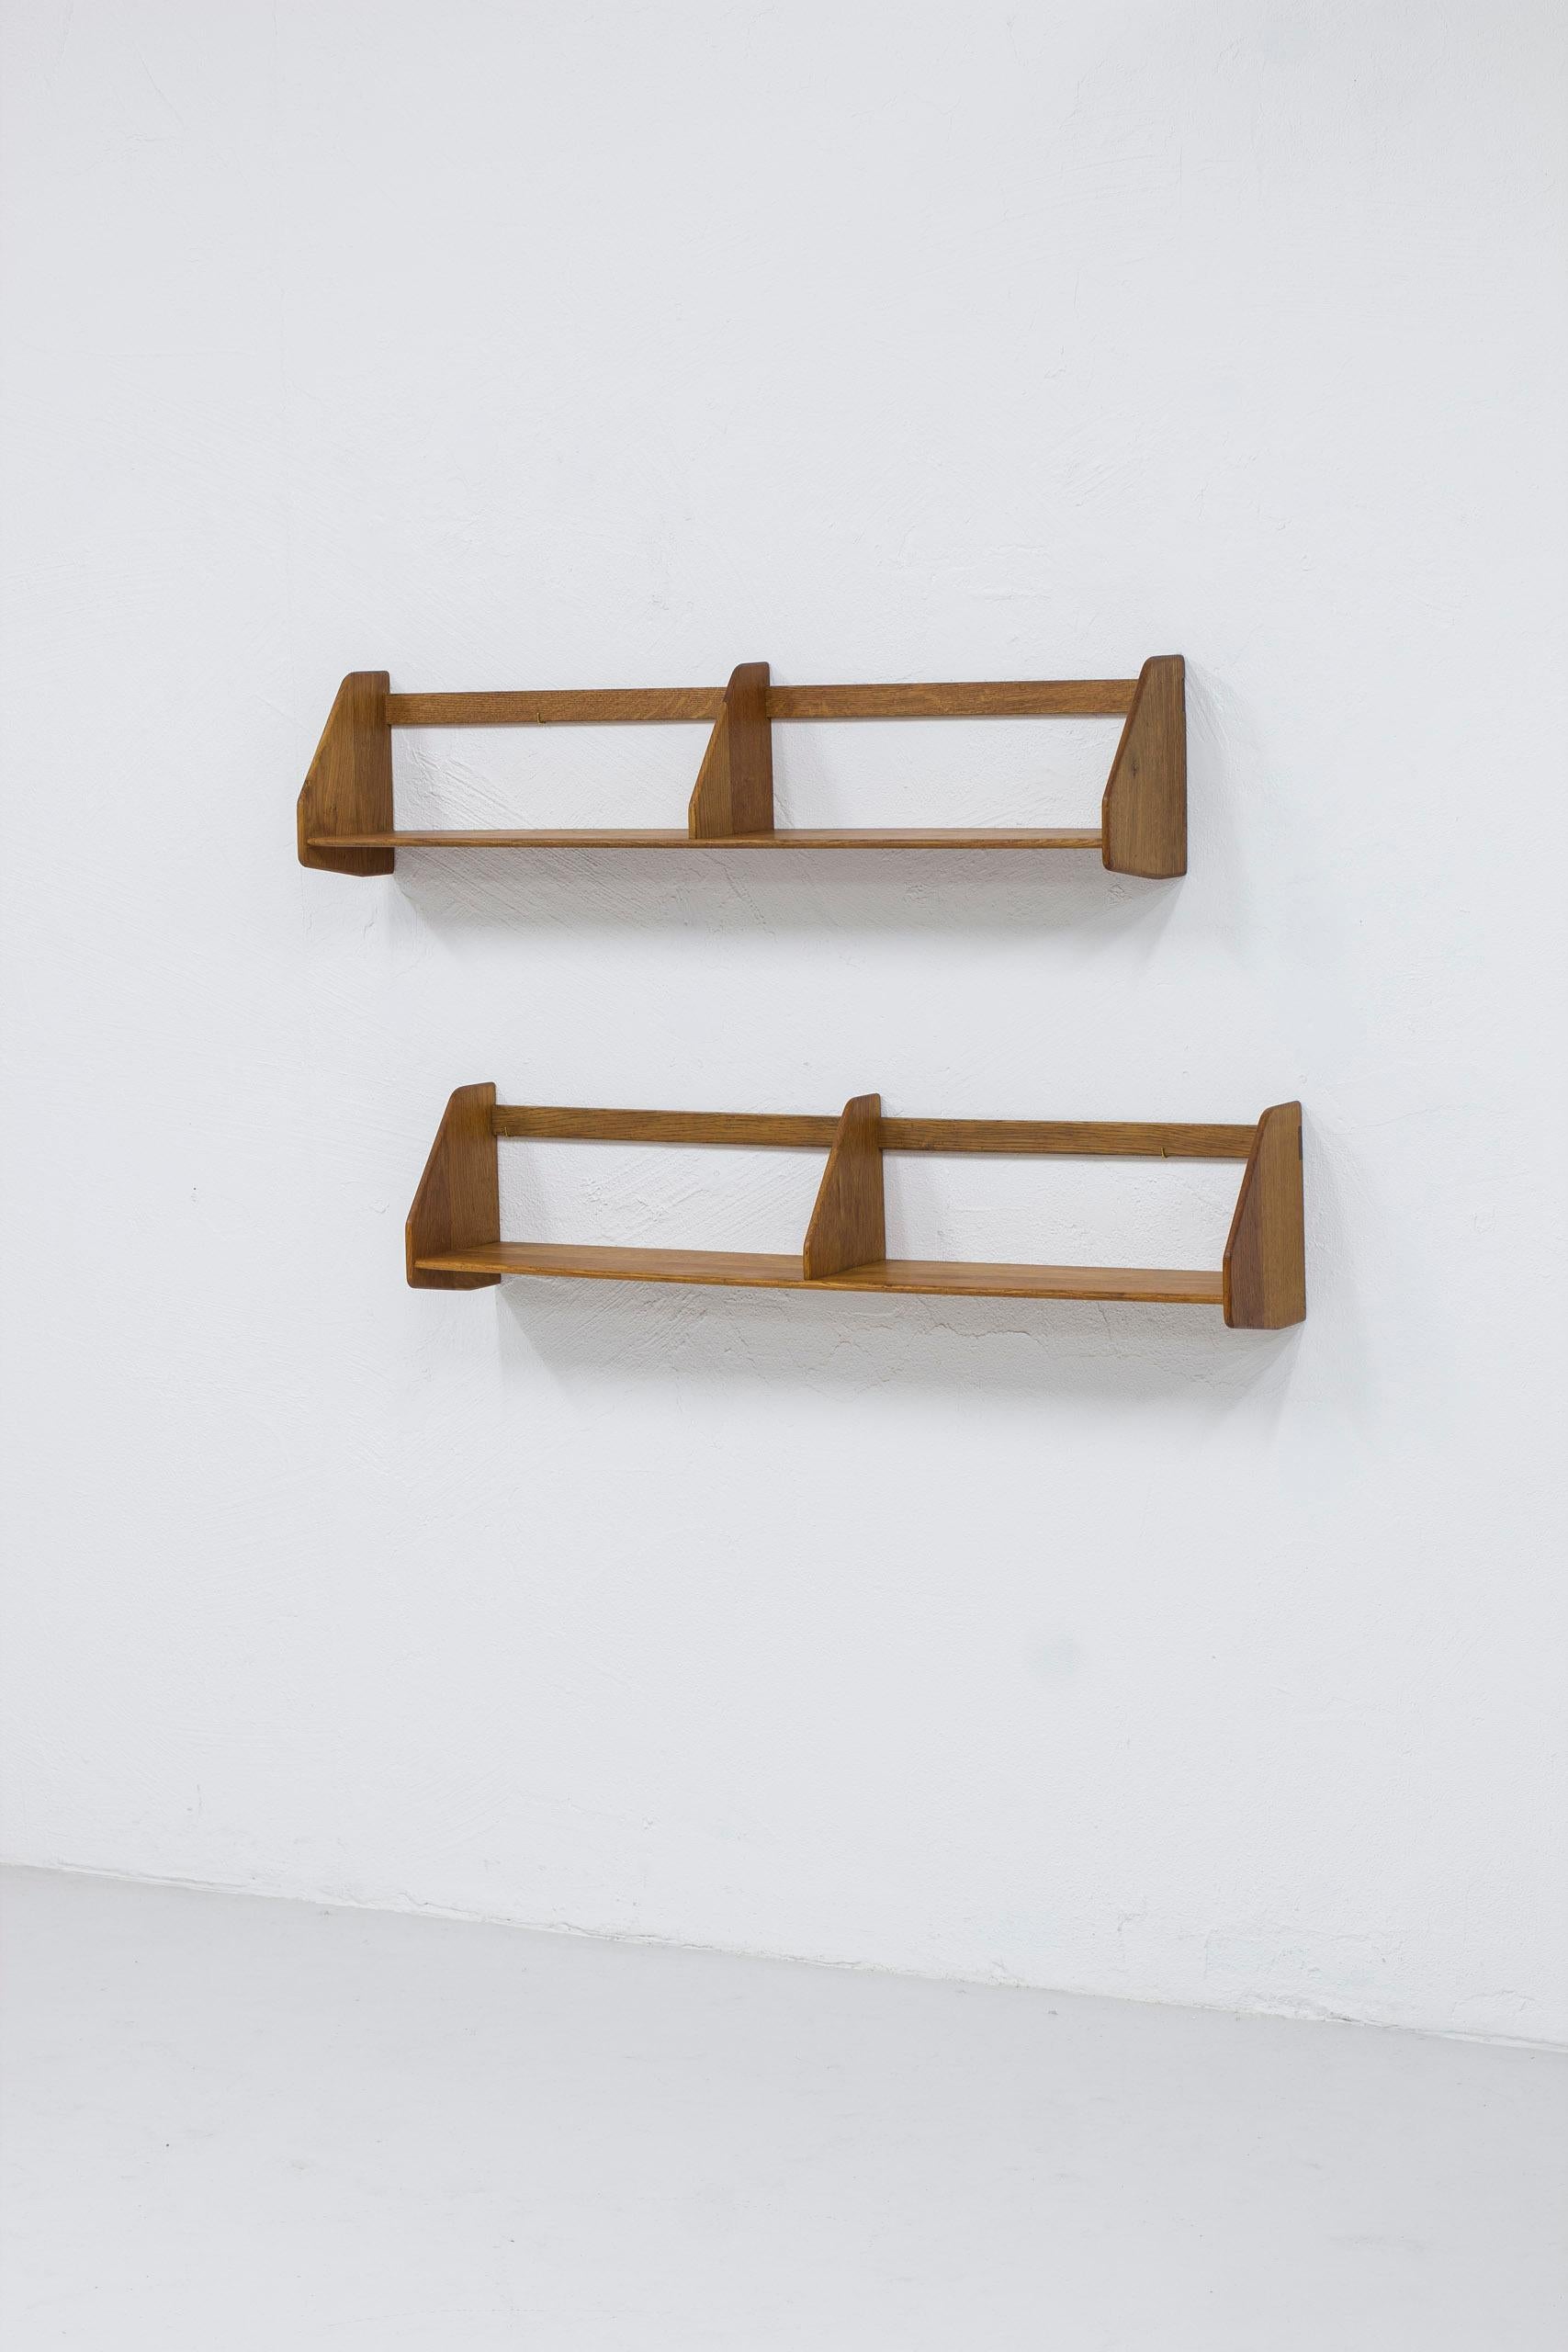 Scandinavian Modern Pair of shelves in oak RY21 by Hans J. Wegner, Denmark, 1950s For Sale